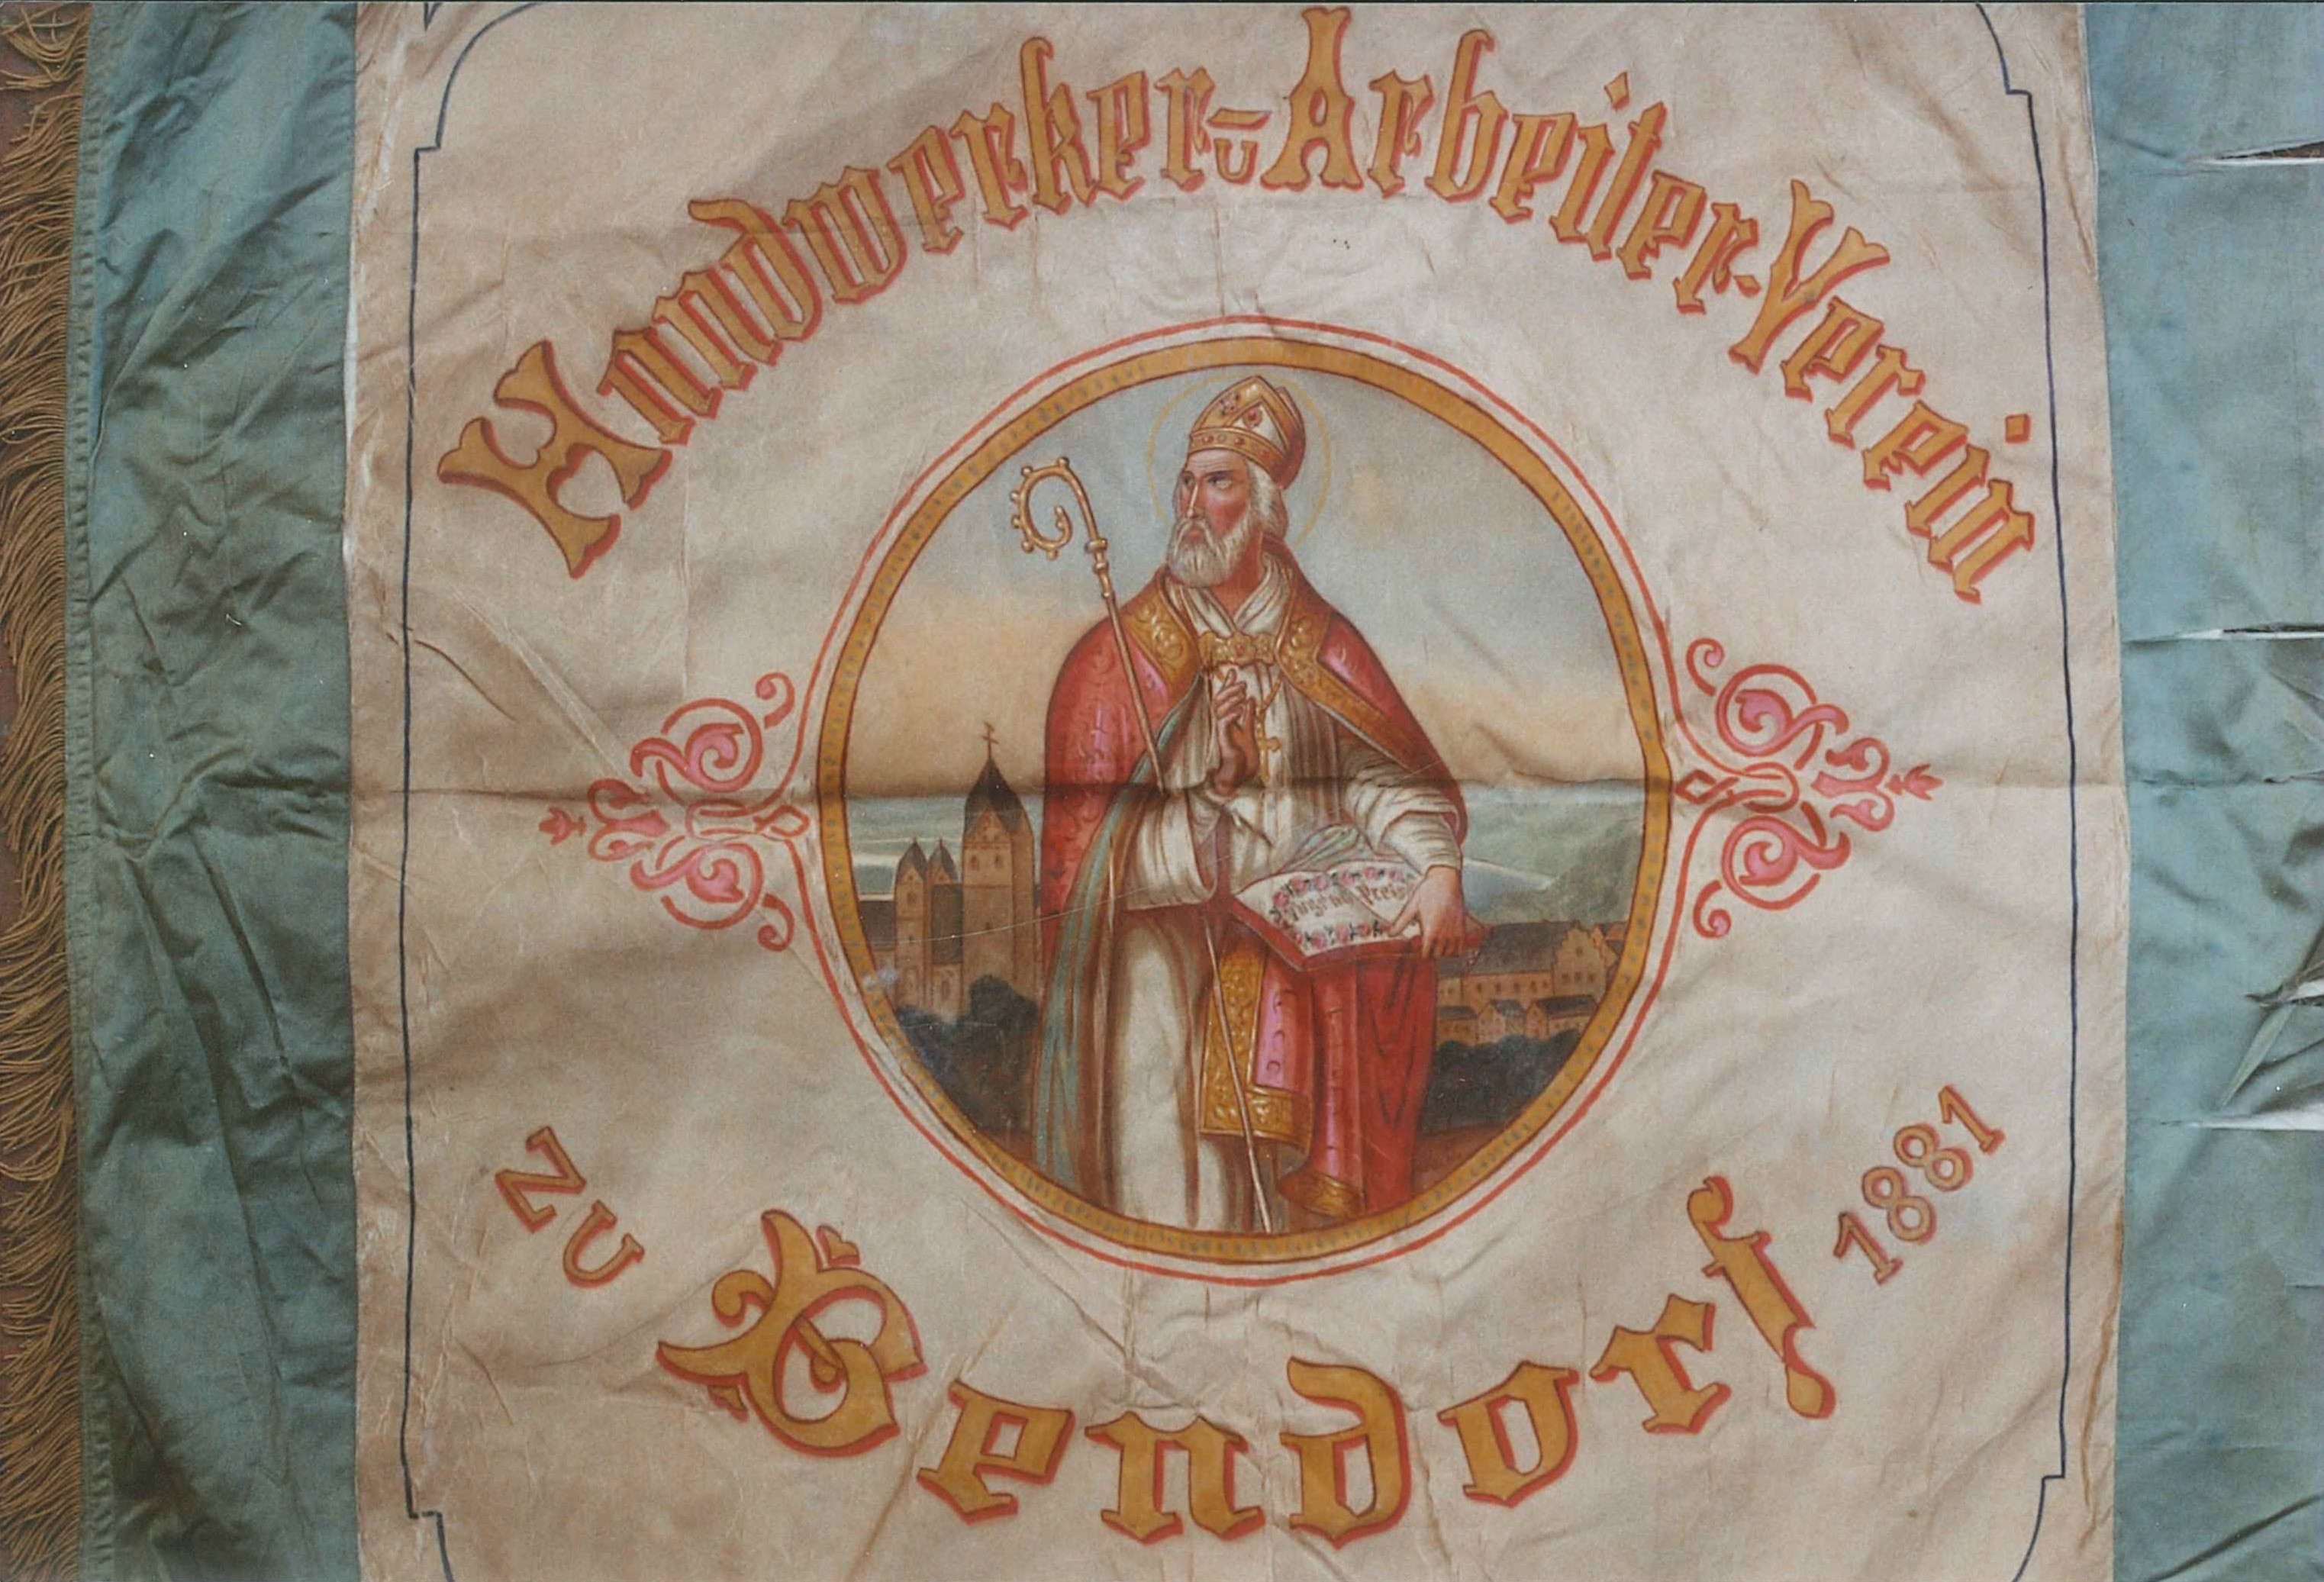 Fahne des Handwerker- und Arbietervereins Bendorf, 1881 (REM CC BY-NC-SA)